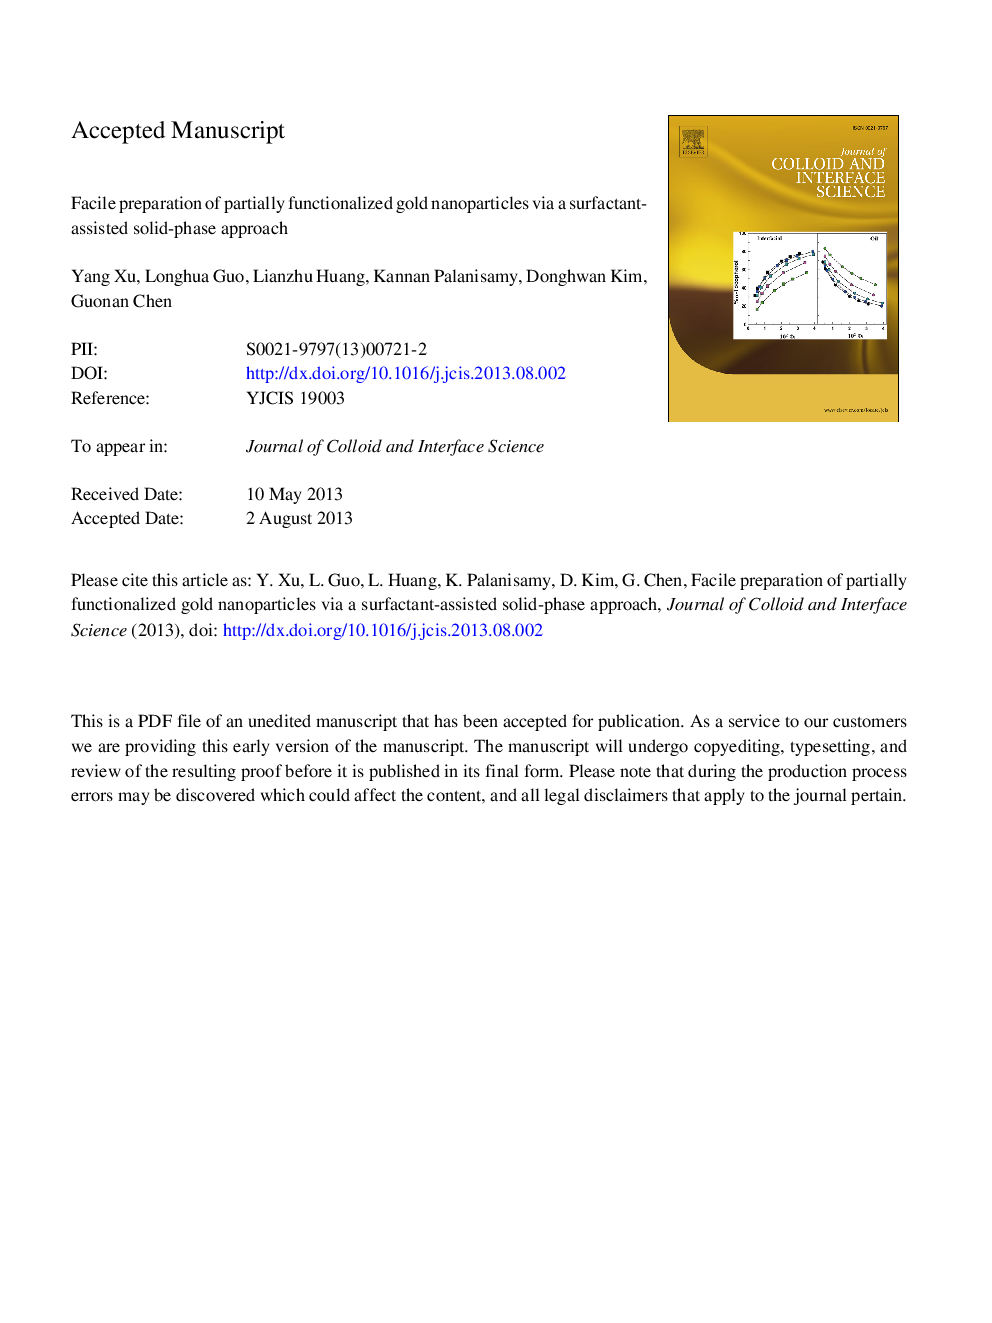 تهیه نانوکامپوزیت نیمه رسانای طلا از طریق یک روش فاز جامد با استفاده از سورفاکتانت 